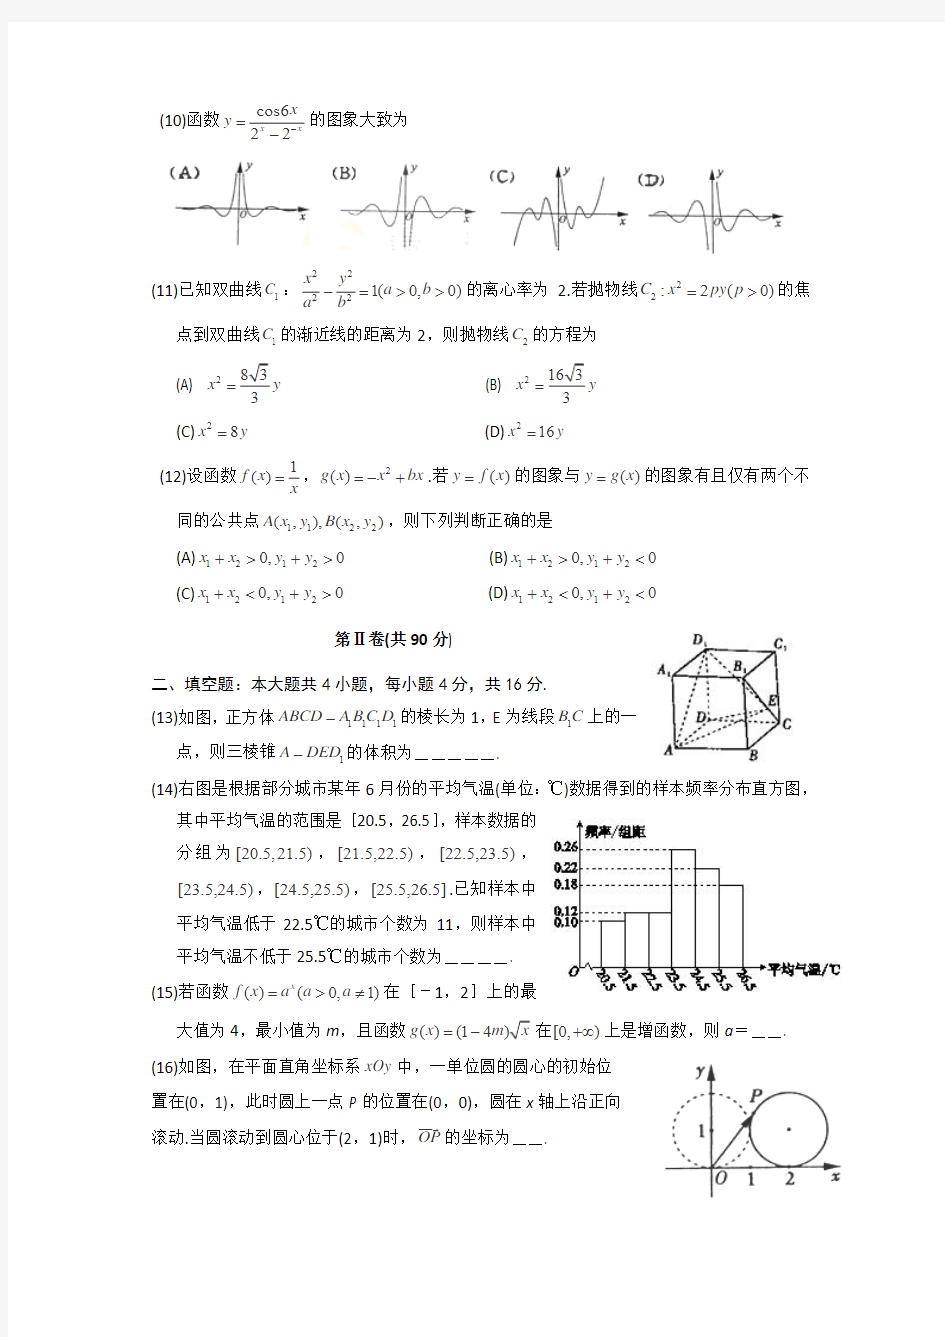 2012年高考文科数学(山东卷)